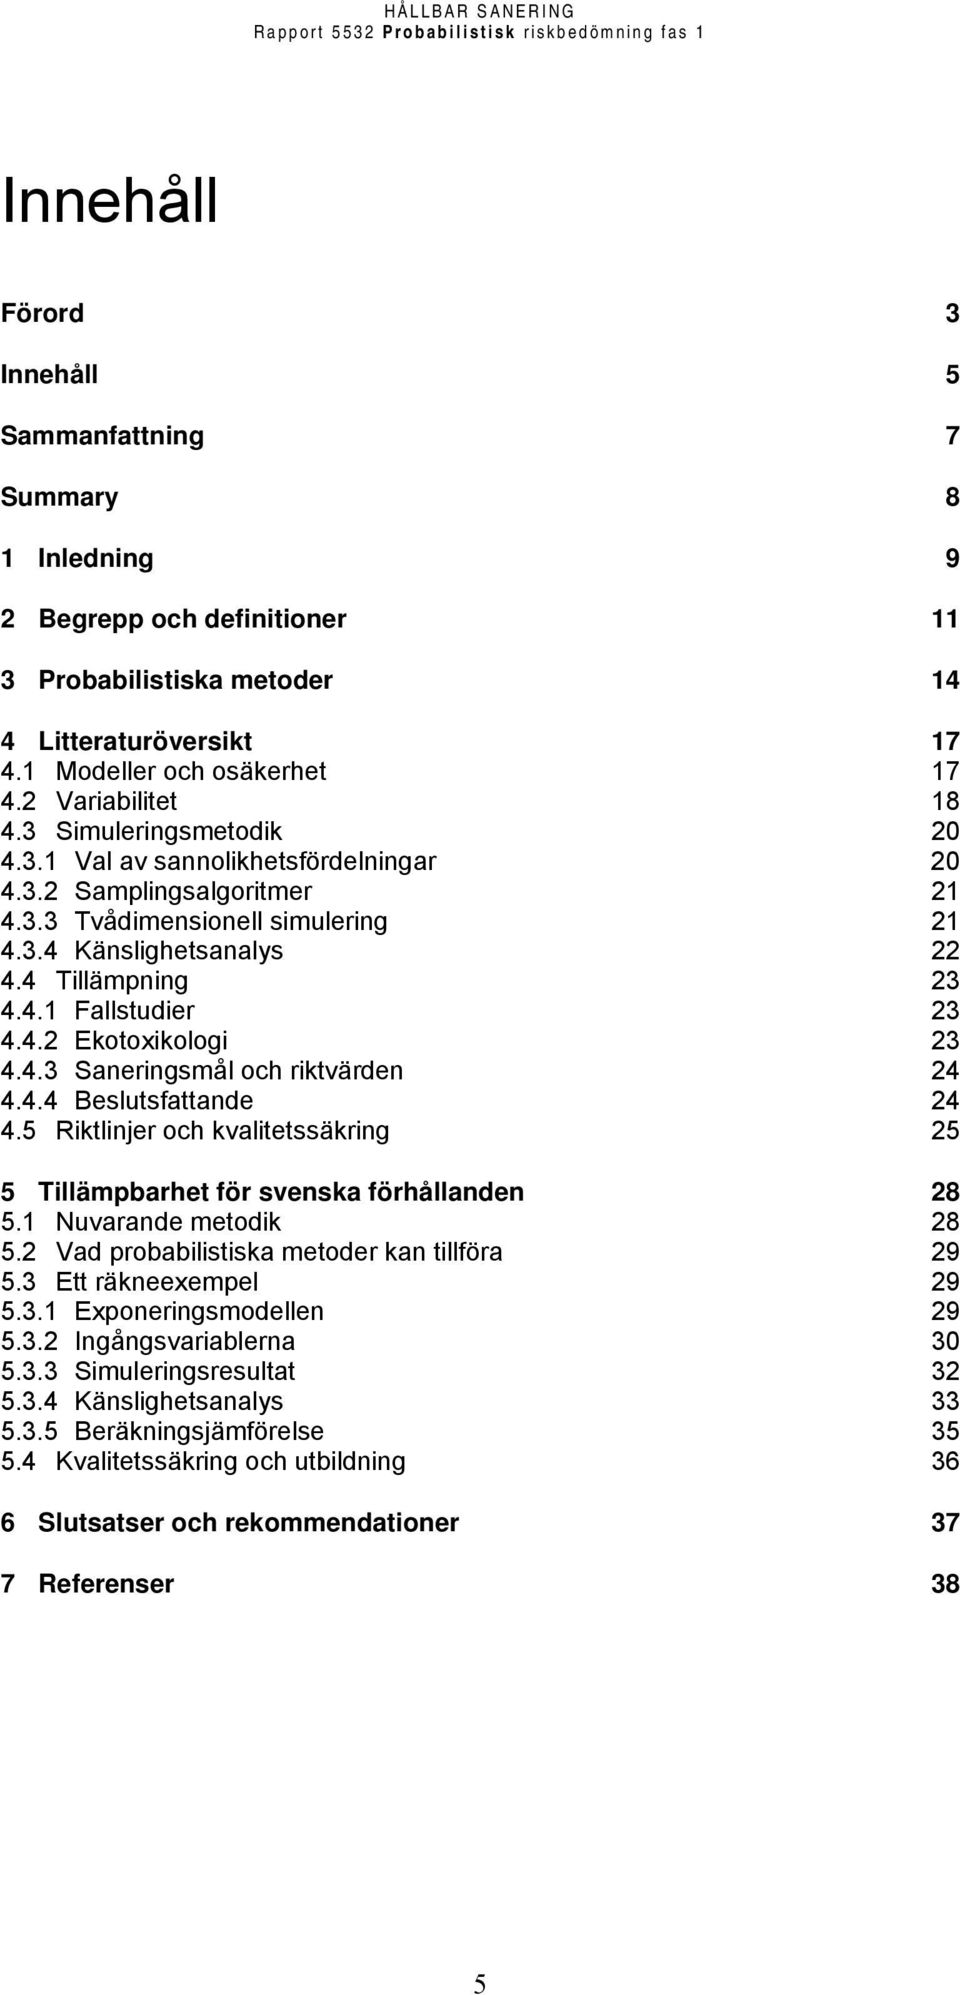 4.2 Ekotoxikologi 23 4.4.3 Saneringsmål och riktvärden 24 4.4.4 Beslutsfattande 24 4.5 Riktlinjer och kvalitetssäkring 25 5 Tillämpbarhet för svenska förhållanden 28 5.1 Nuvarande metodik 28 5.